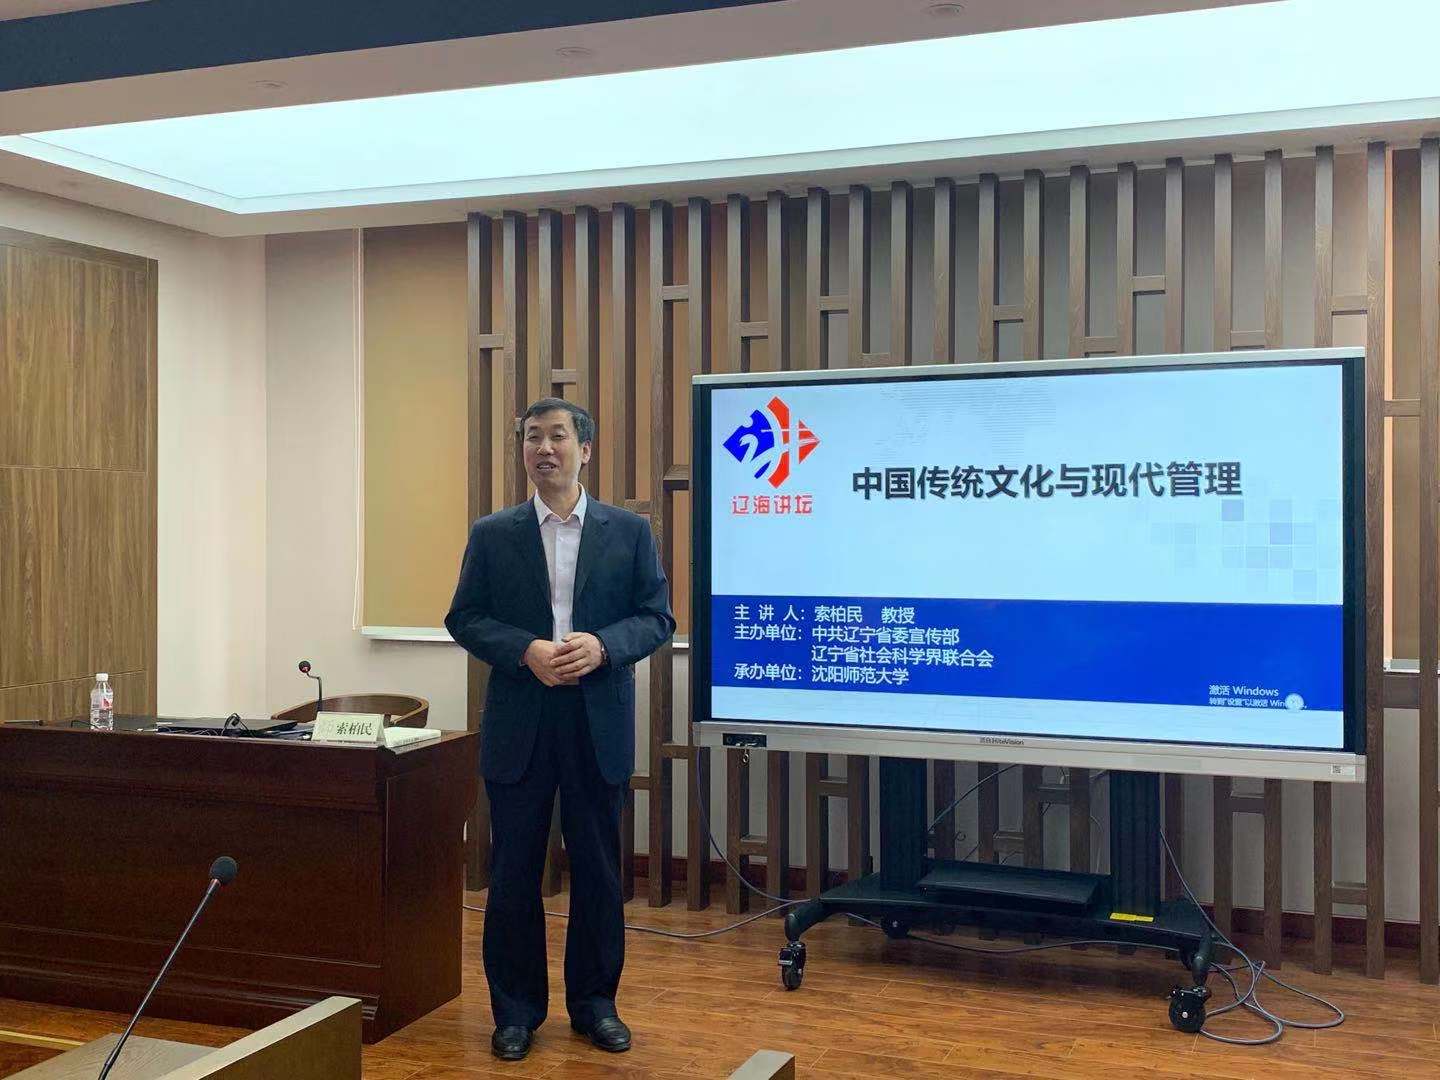 信息计量学之父Ronald Rousseau(罗纳德.鲁索)教授受邀来图情档系作报告-上海大学新闻网